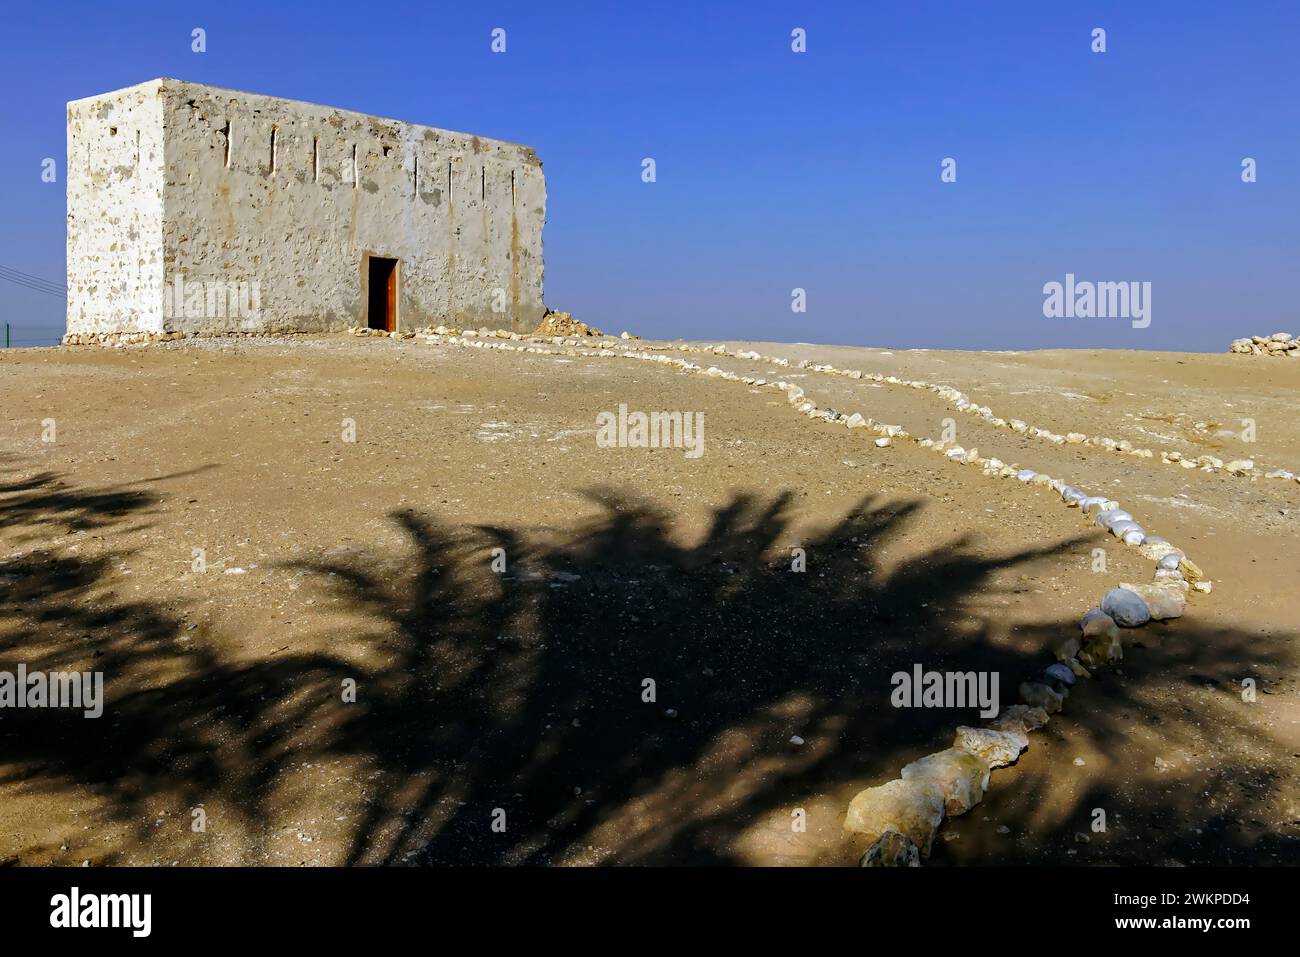 Sito archeologico di Ubar vicino a Shisr, Rub' al Khali, il quartiere vuoto, Oman. Foto Stock